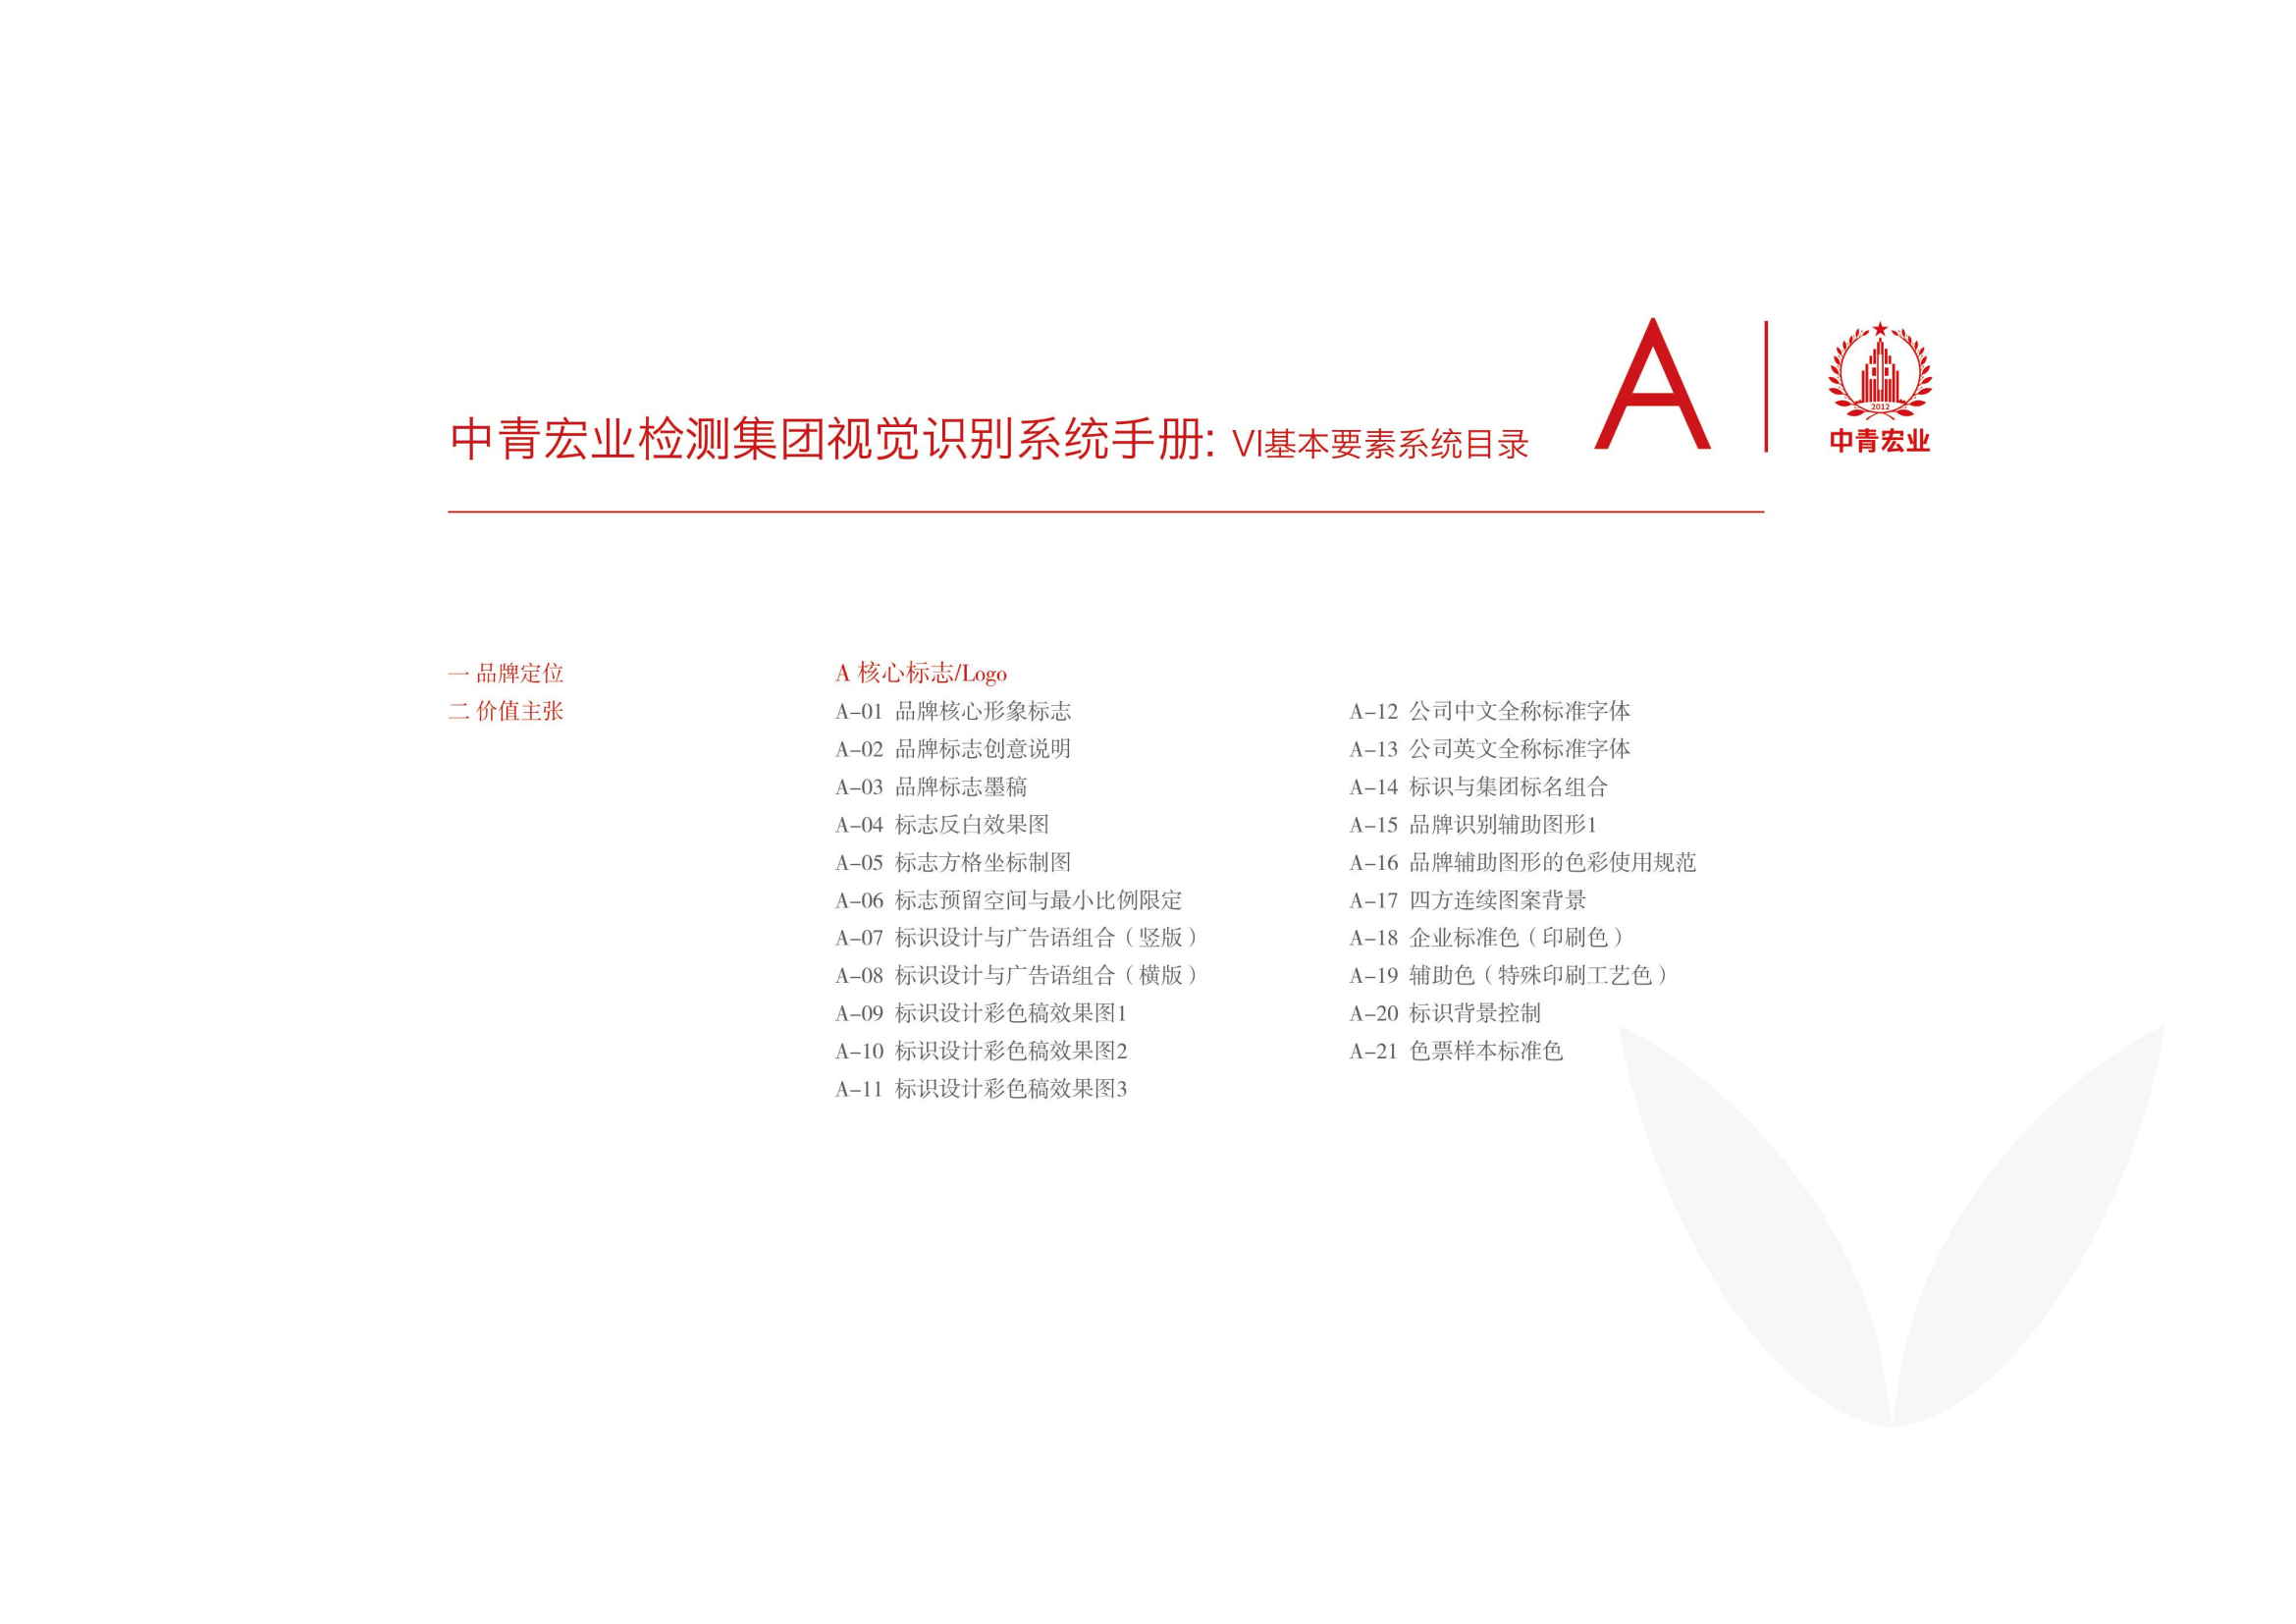 中青宏业VI设计系统1.1（基础部分）-01_03 - 副本.png